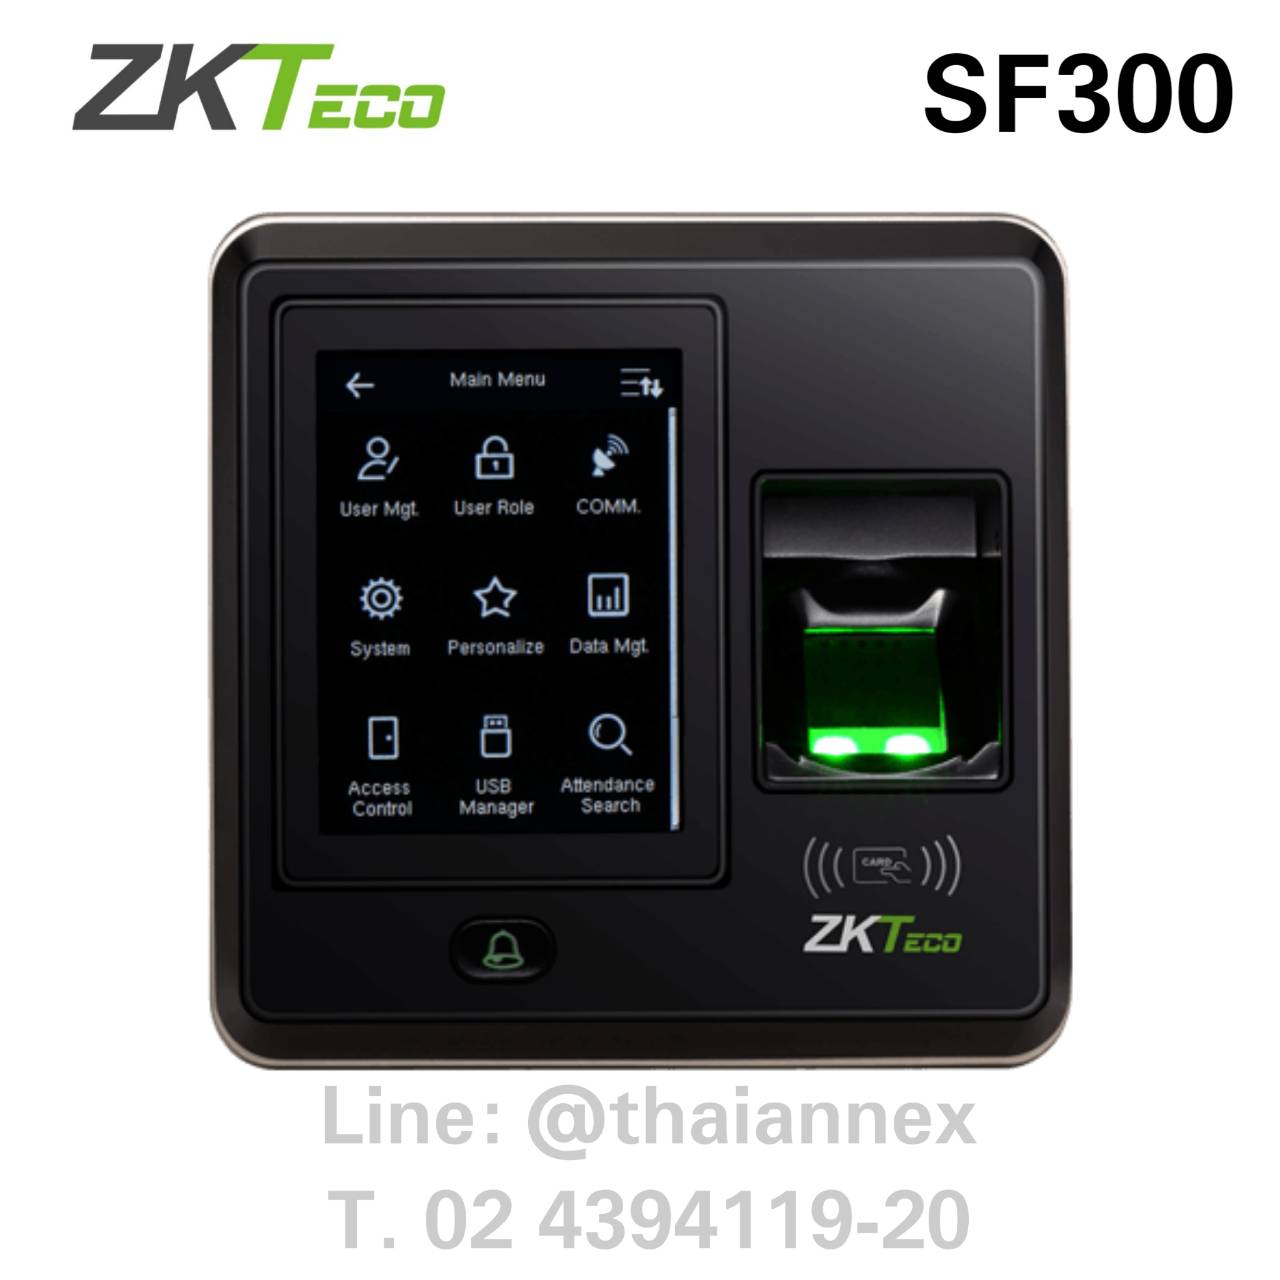 เครื่องสแกนลายนิ้วมือ ZK SF300 Touch Screen